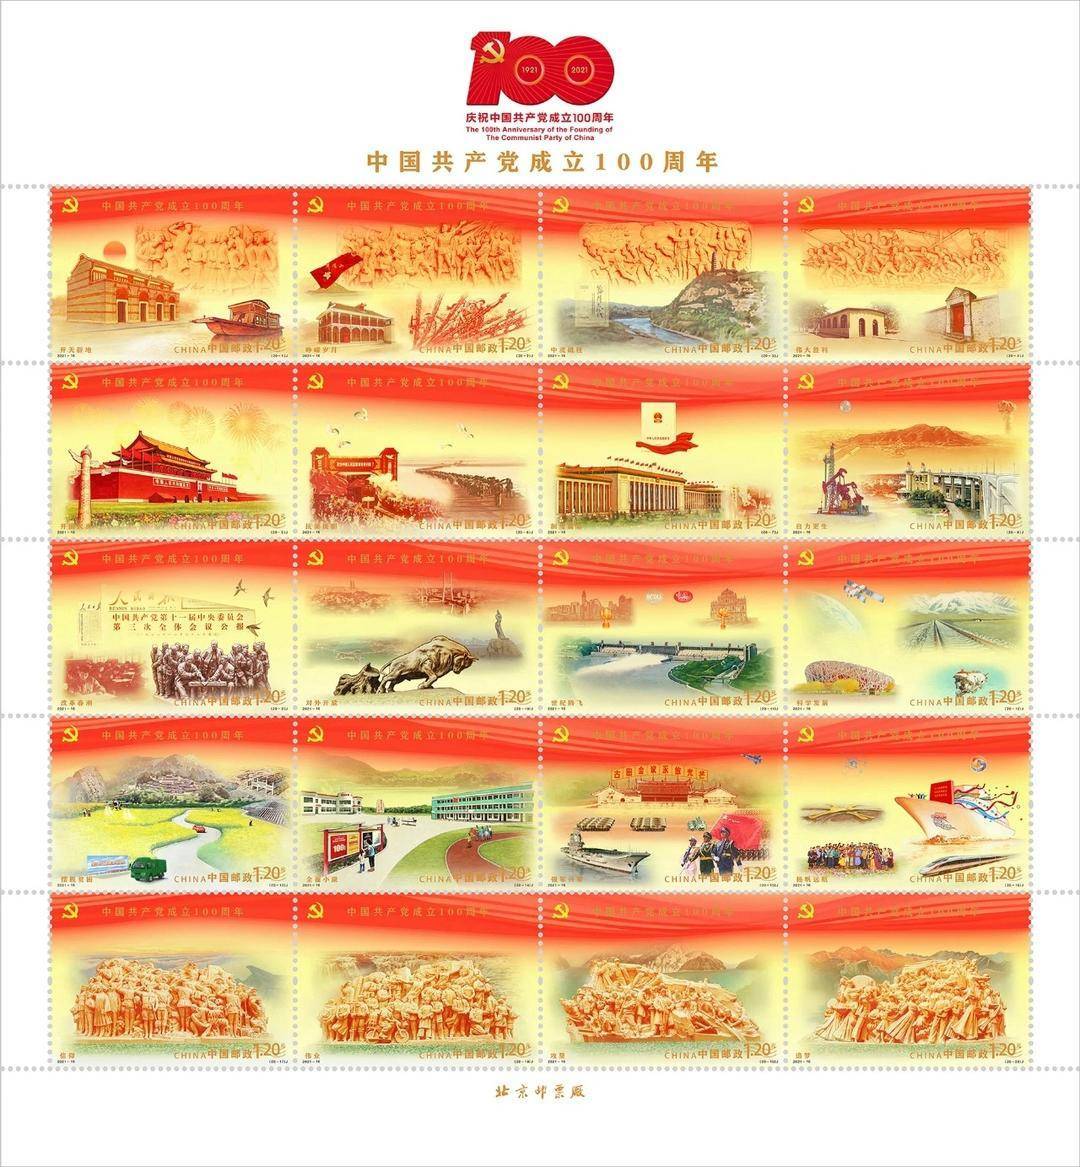 7月1日发行：《中国共产党成立100周年》纪念邮票1套20枚、纪念封1套1枚